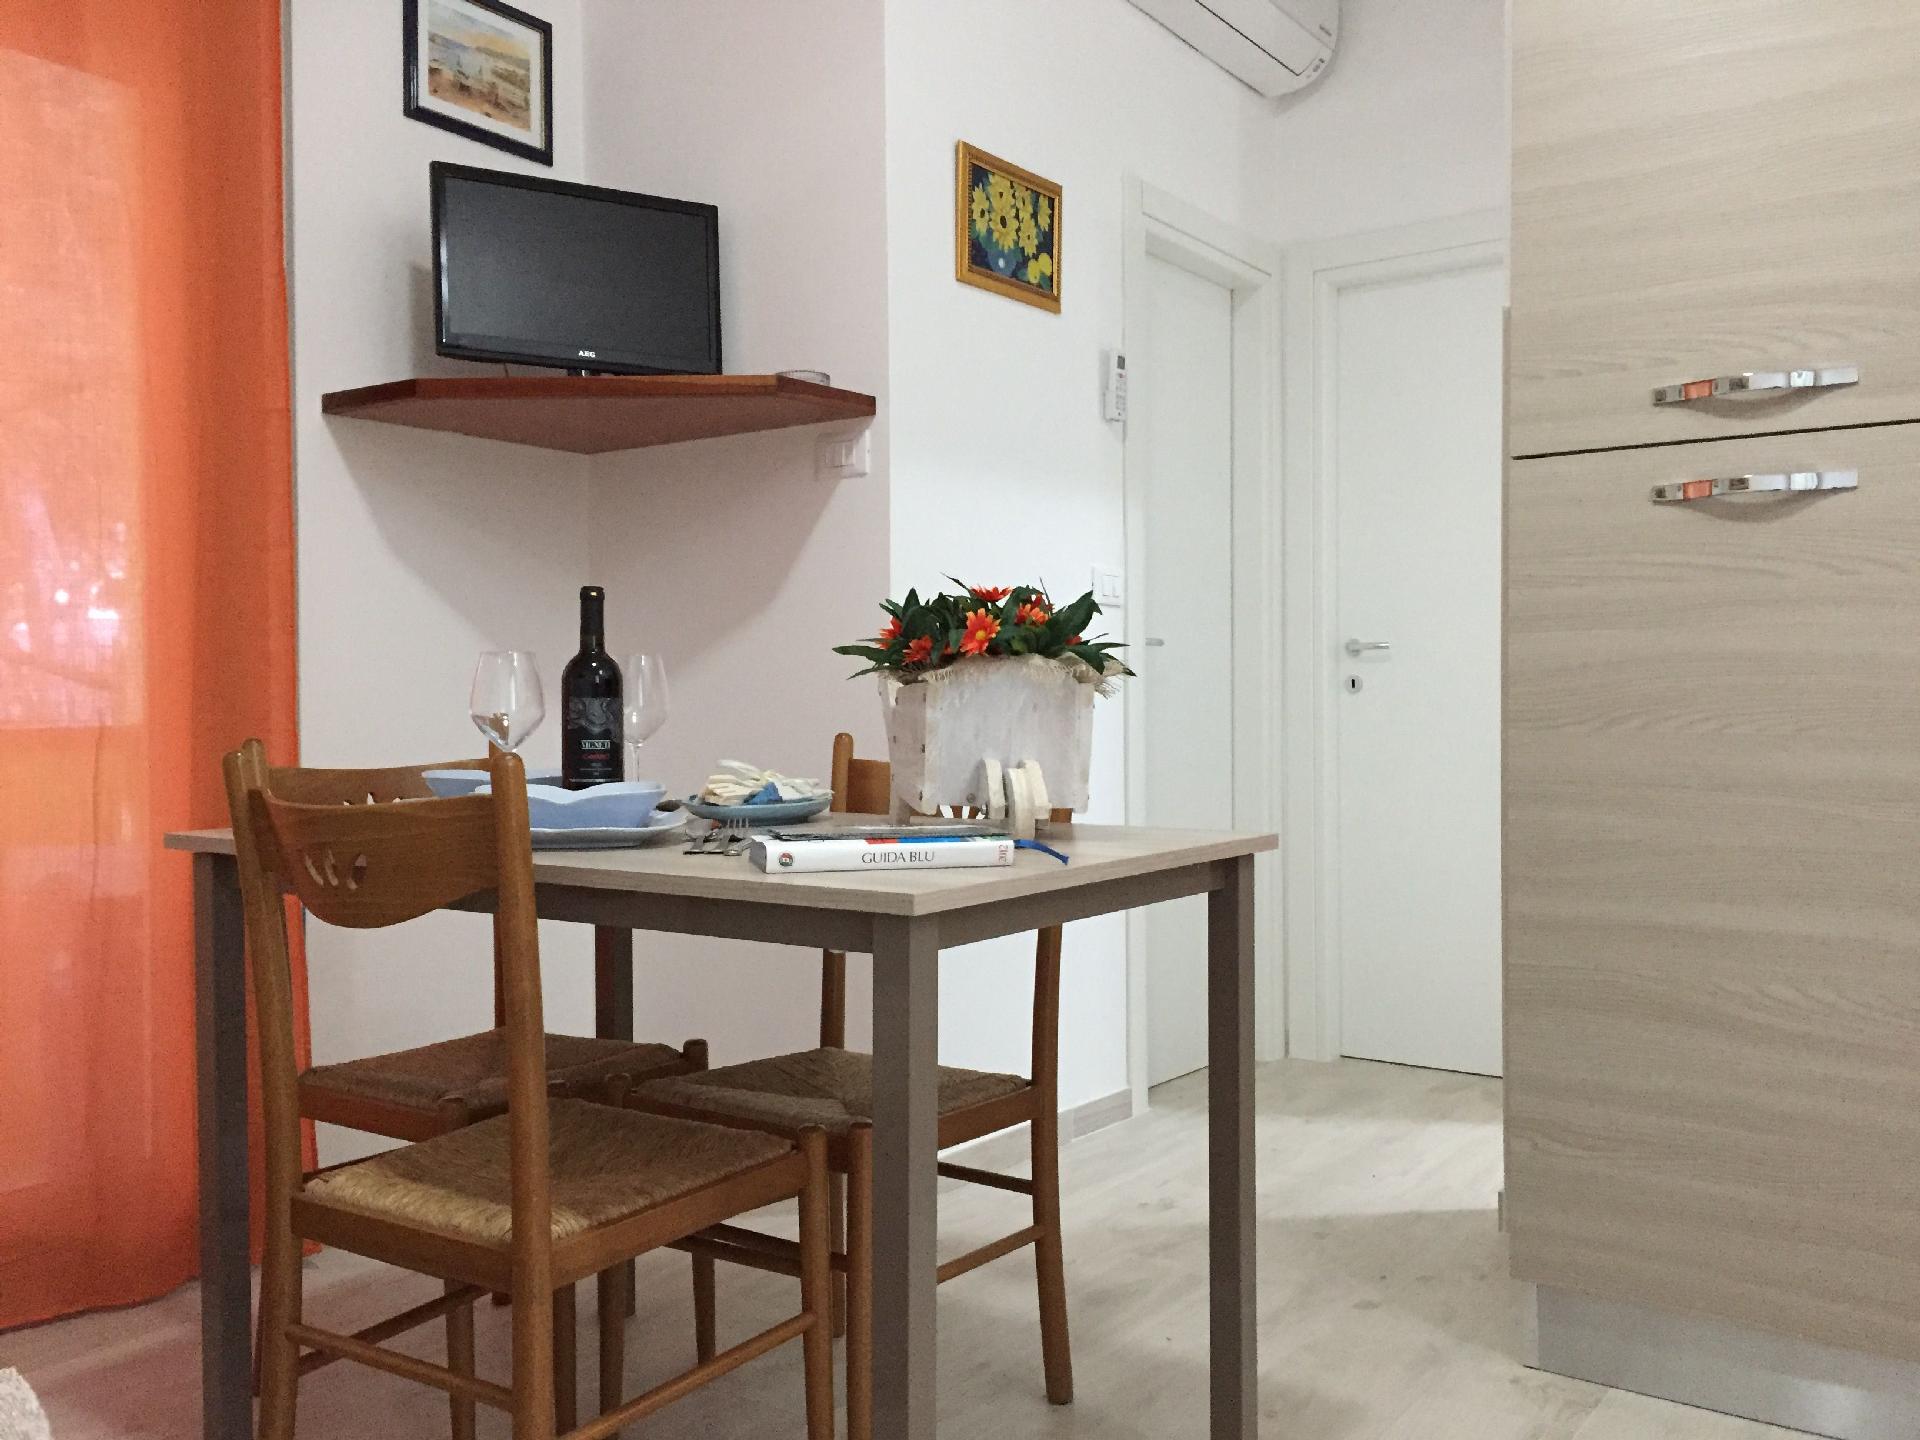 Ferienwohnung für 5 Personen ca. 45 m² i Ferienwohnung in Italien